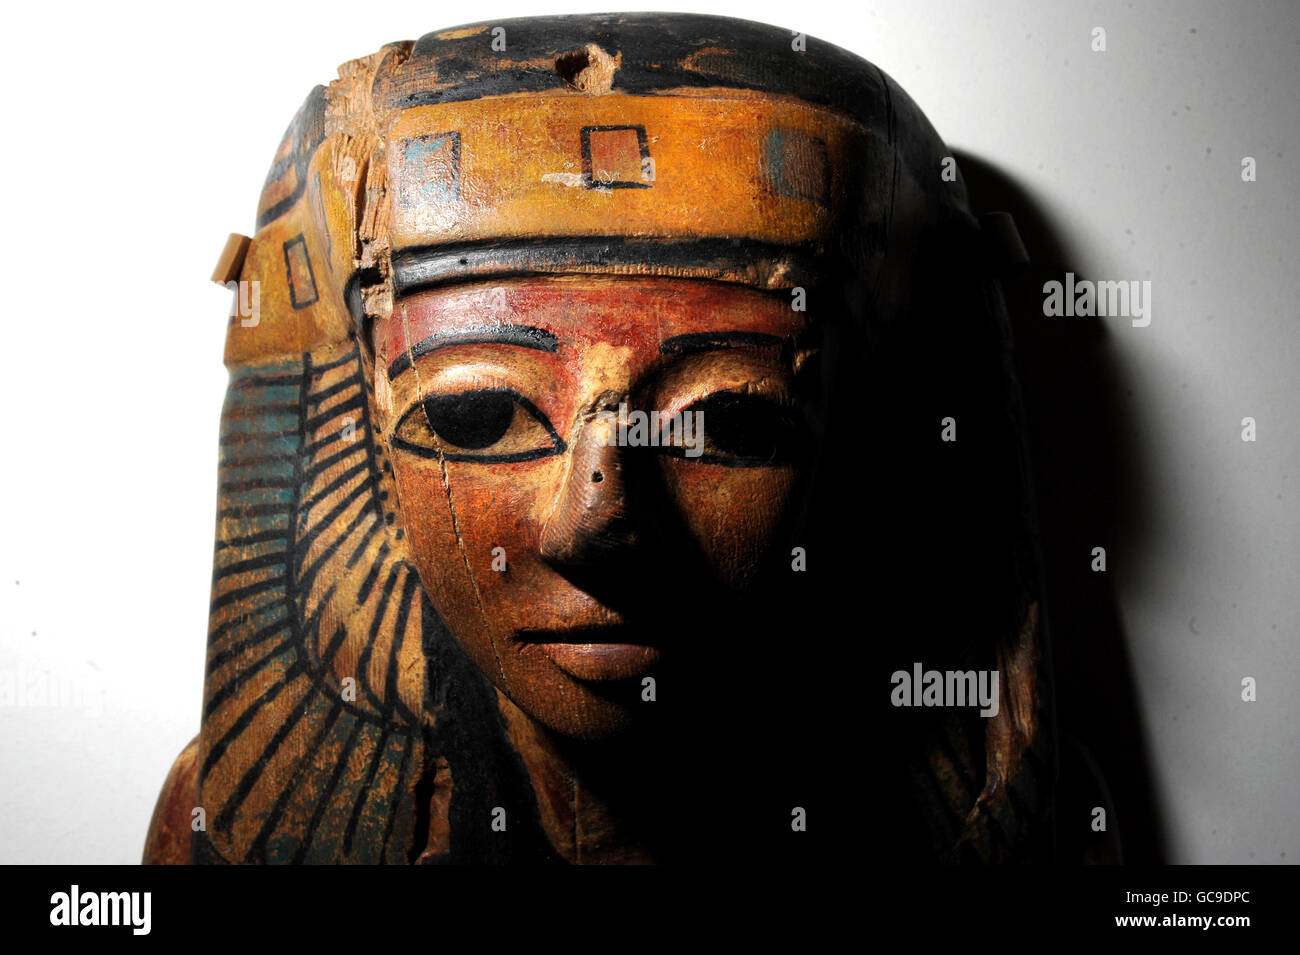 Un faux masque de cercueil égyptien à l'avant-première d'une nouvelle exposition sur l'art de la criminalité qui comprend des contrefaçons célèbres, au Victoria and Albert Museum, Londres. Banque D'Images